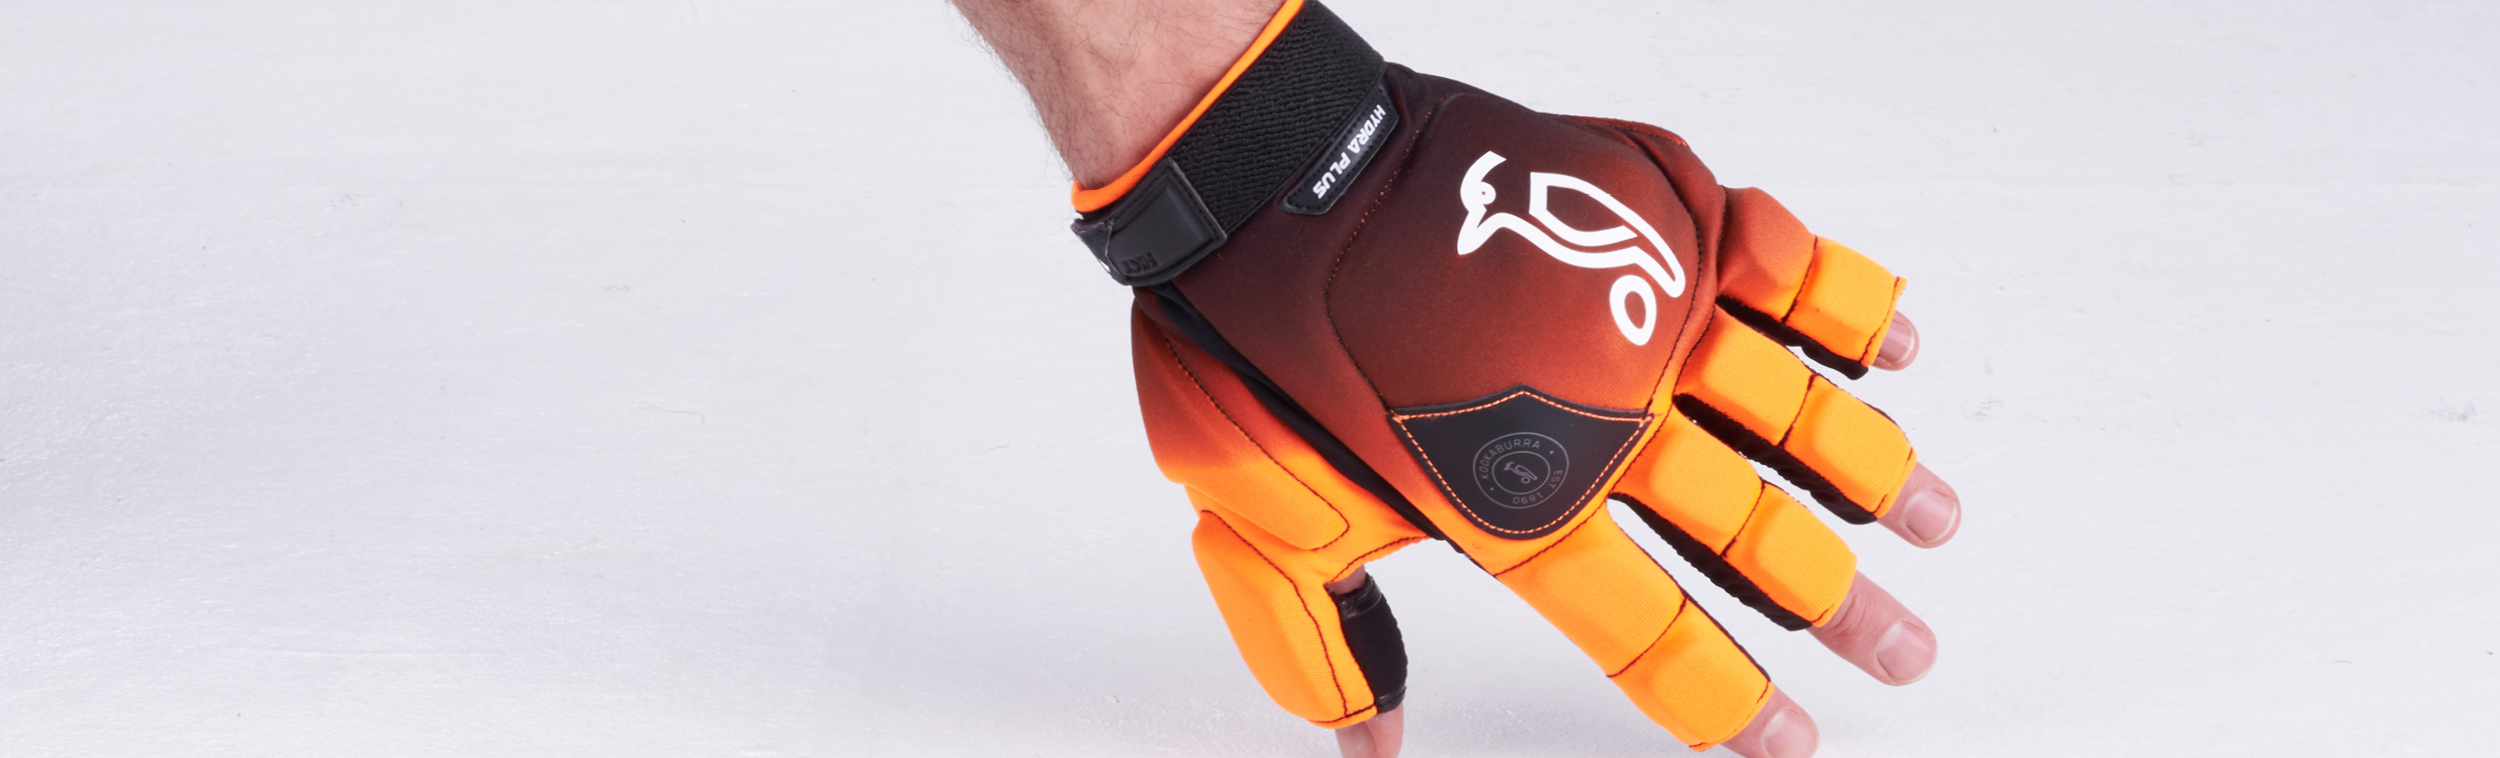 Kookaburra Hockey Protection - Hockey Shin Guards and Hockey gloves